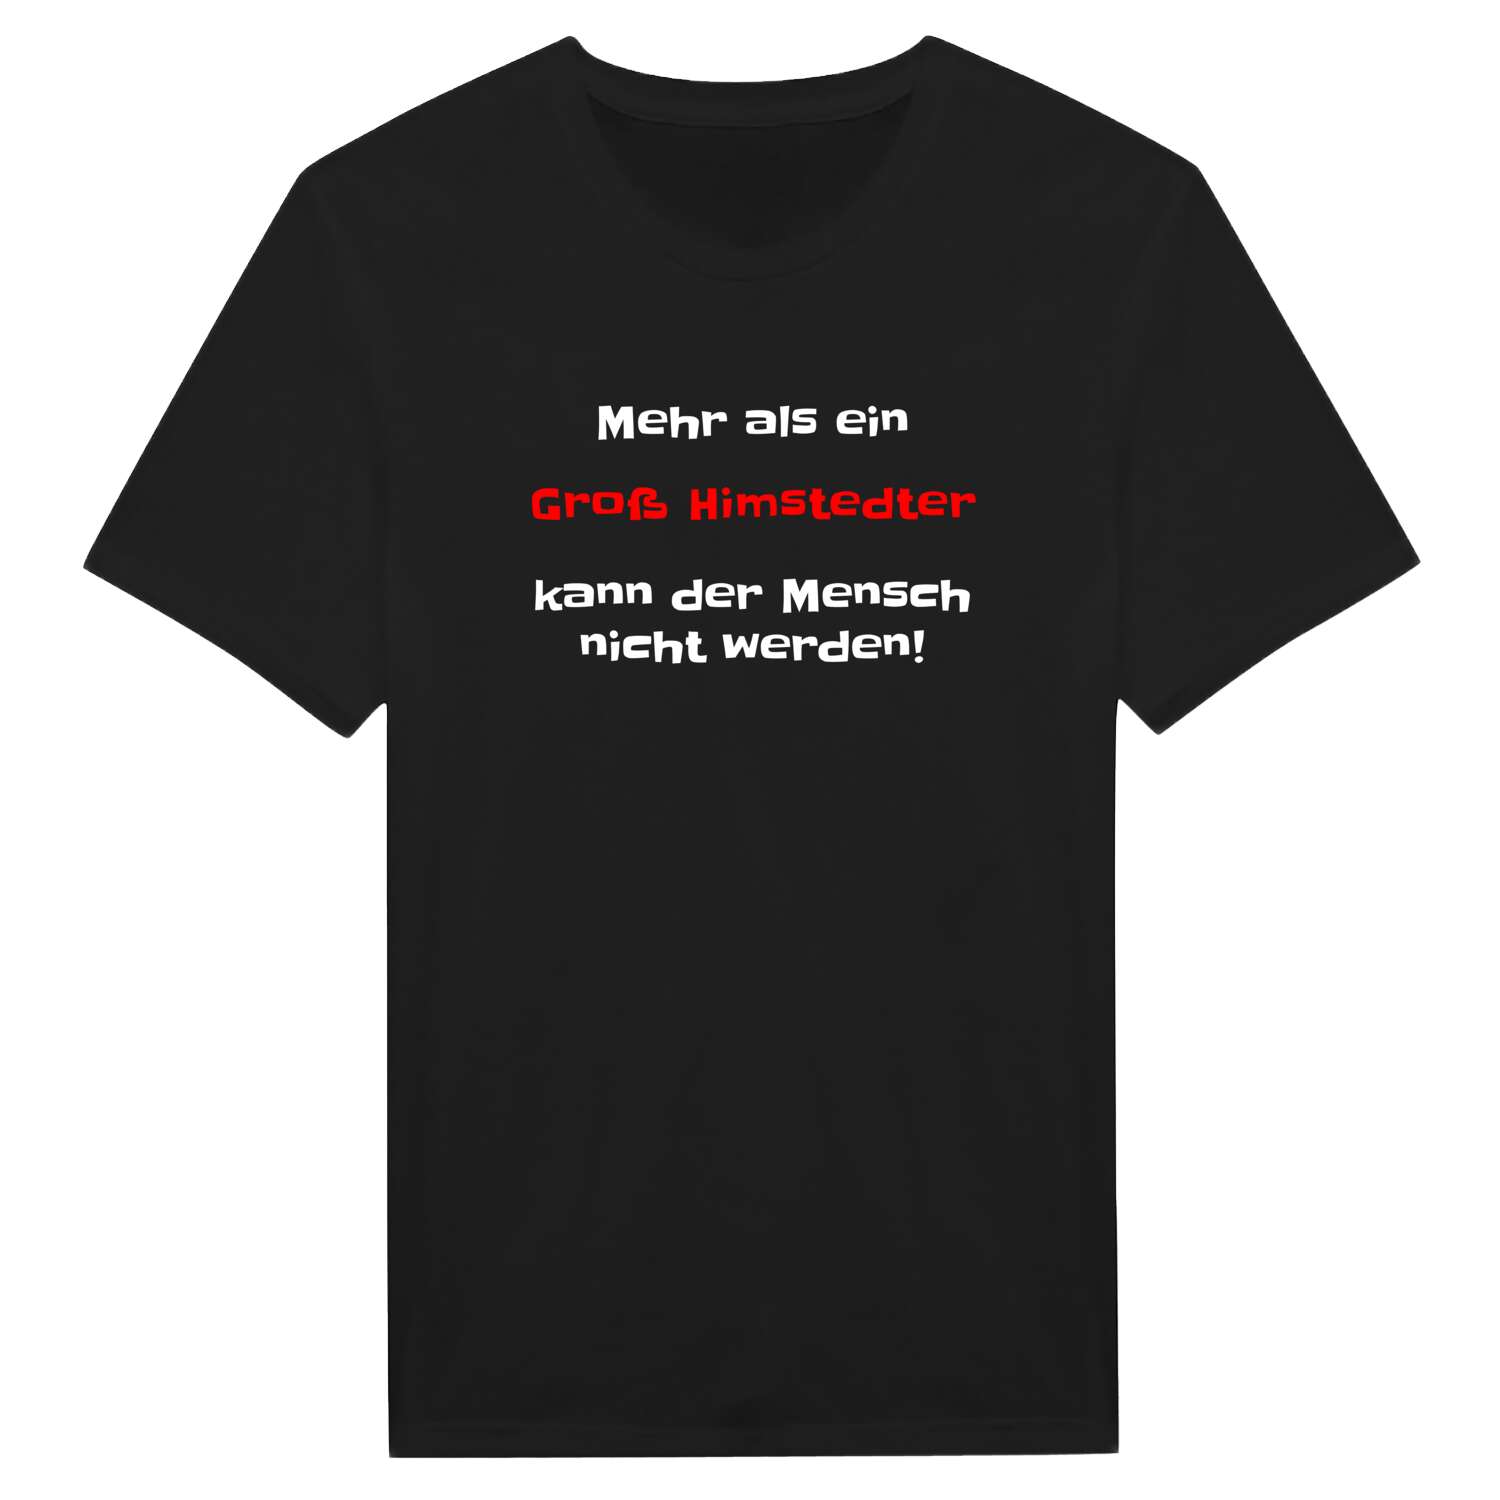 Groß Himstedt T-Shirt »Mehr als ein«